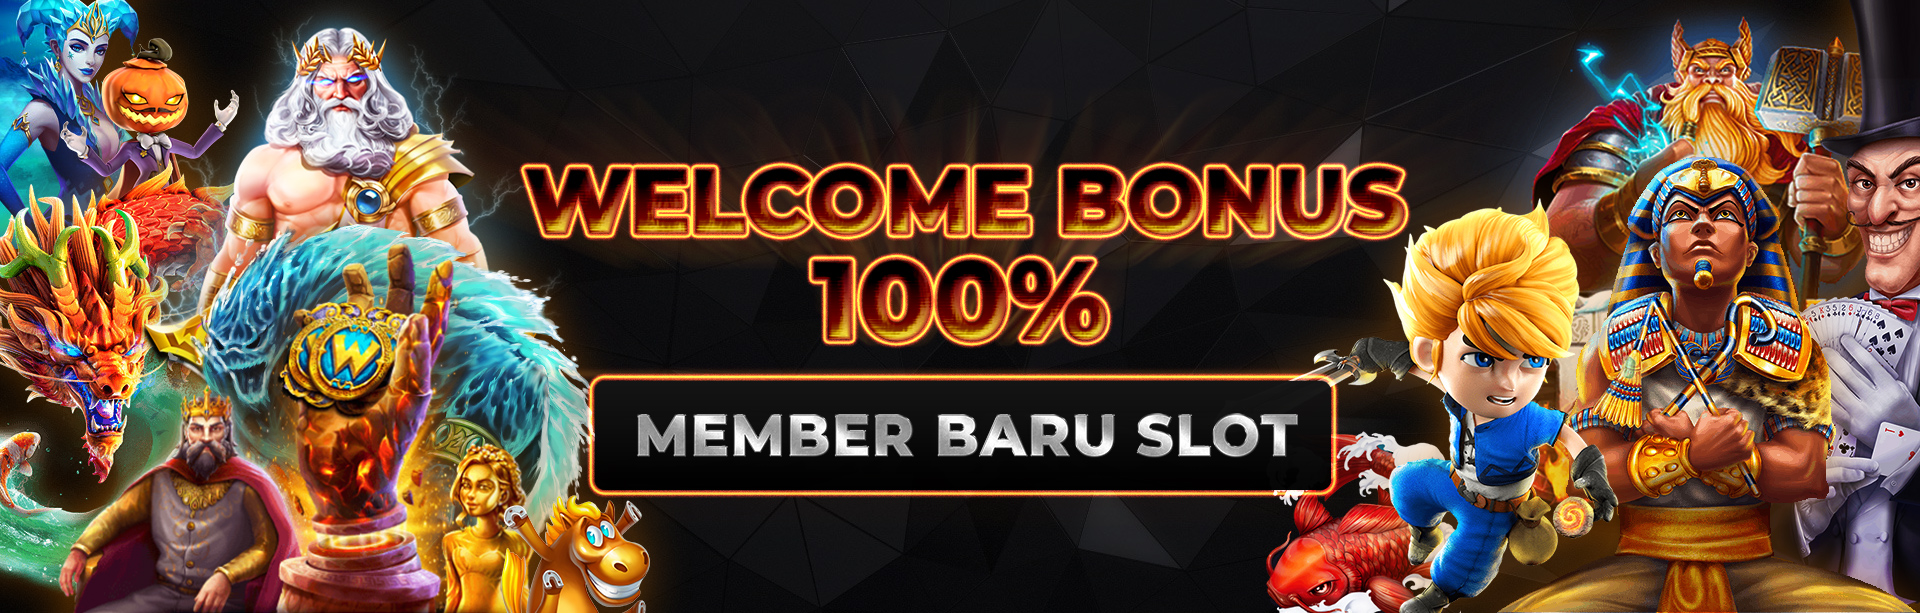 Bonus Member Baru Slot 100%